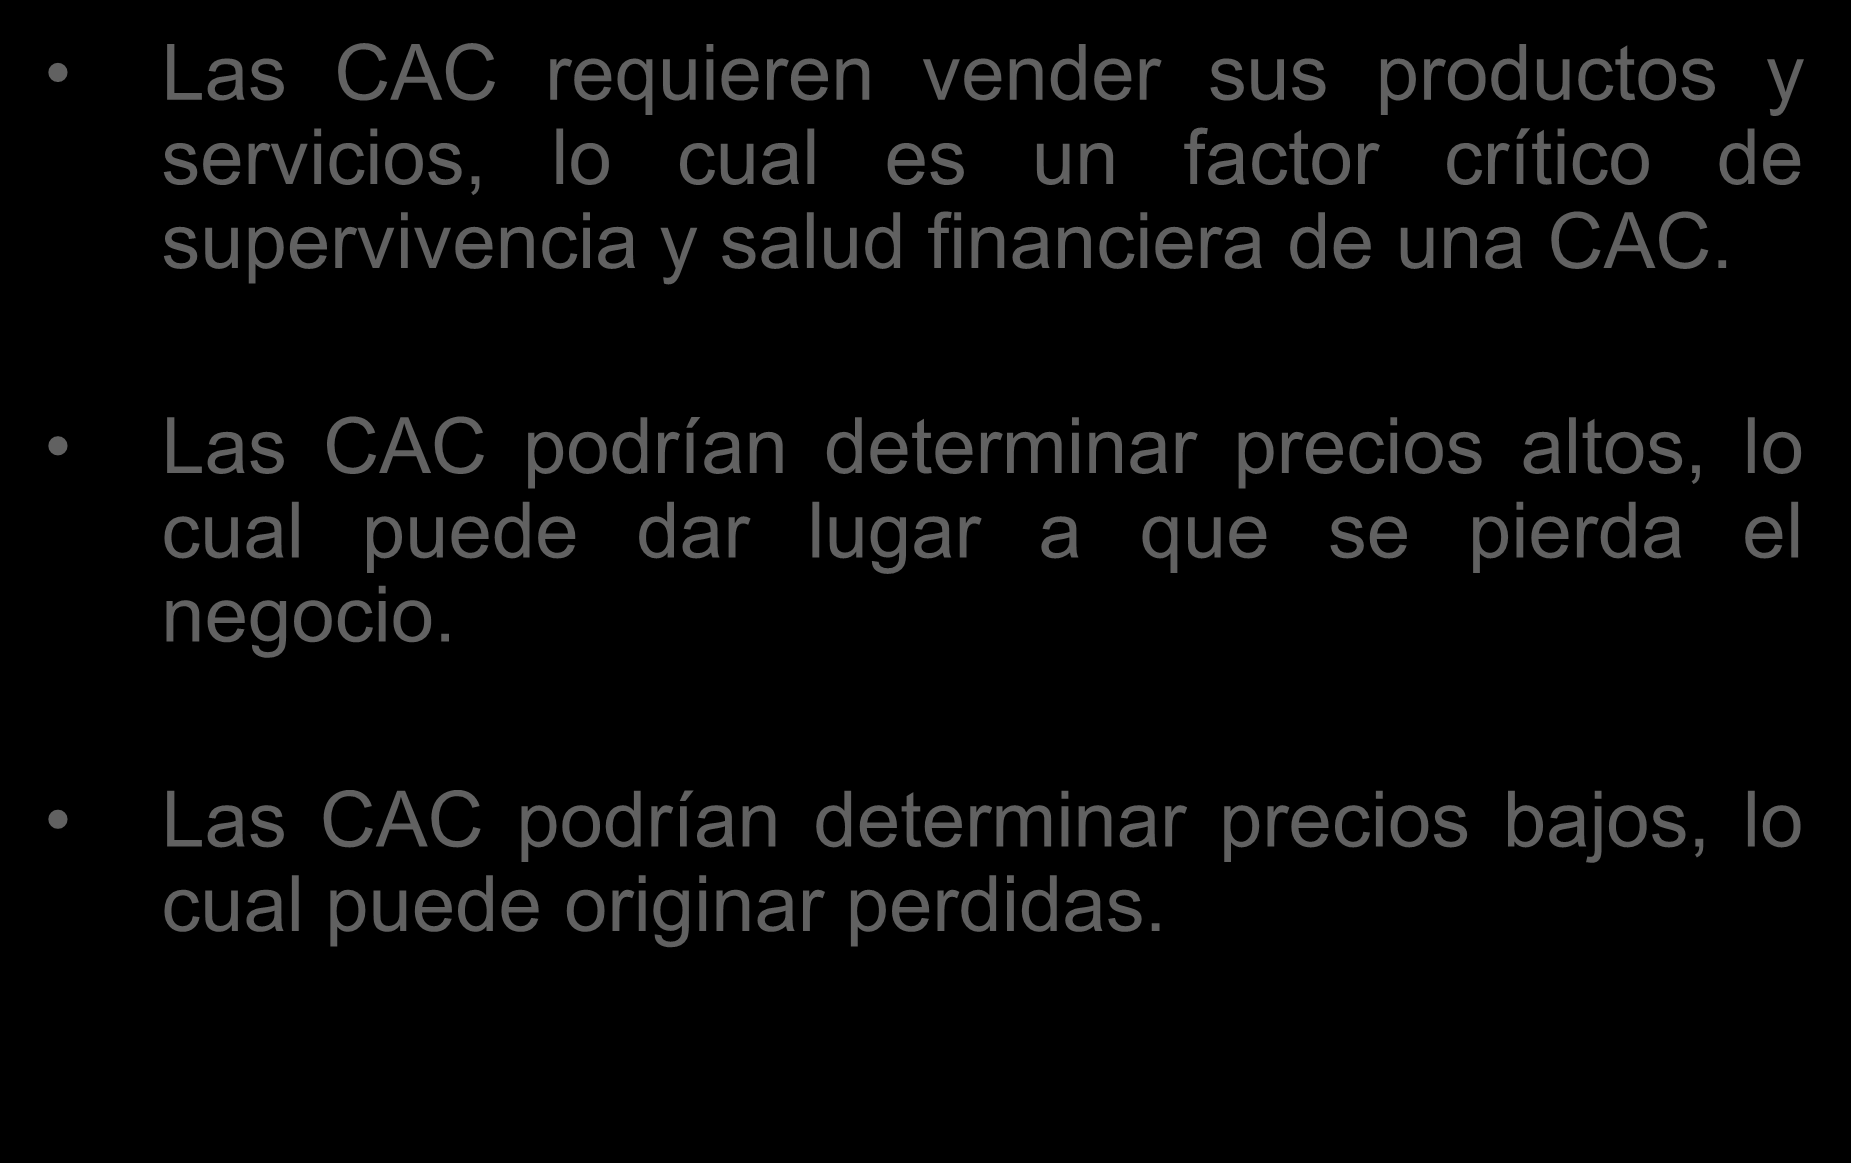 Las CAC requieren vender sus productos y servicios, lo cual es un factor crítico de supervivencia y salud financiera de una CAC.